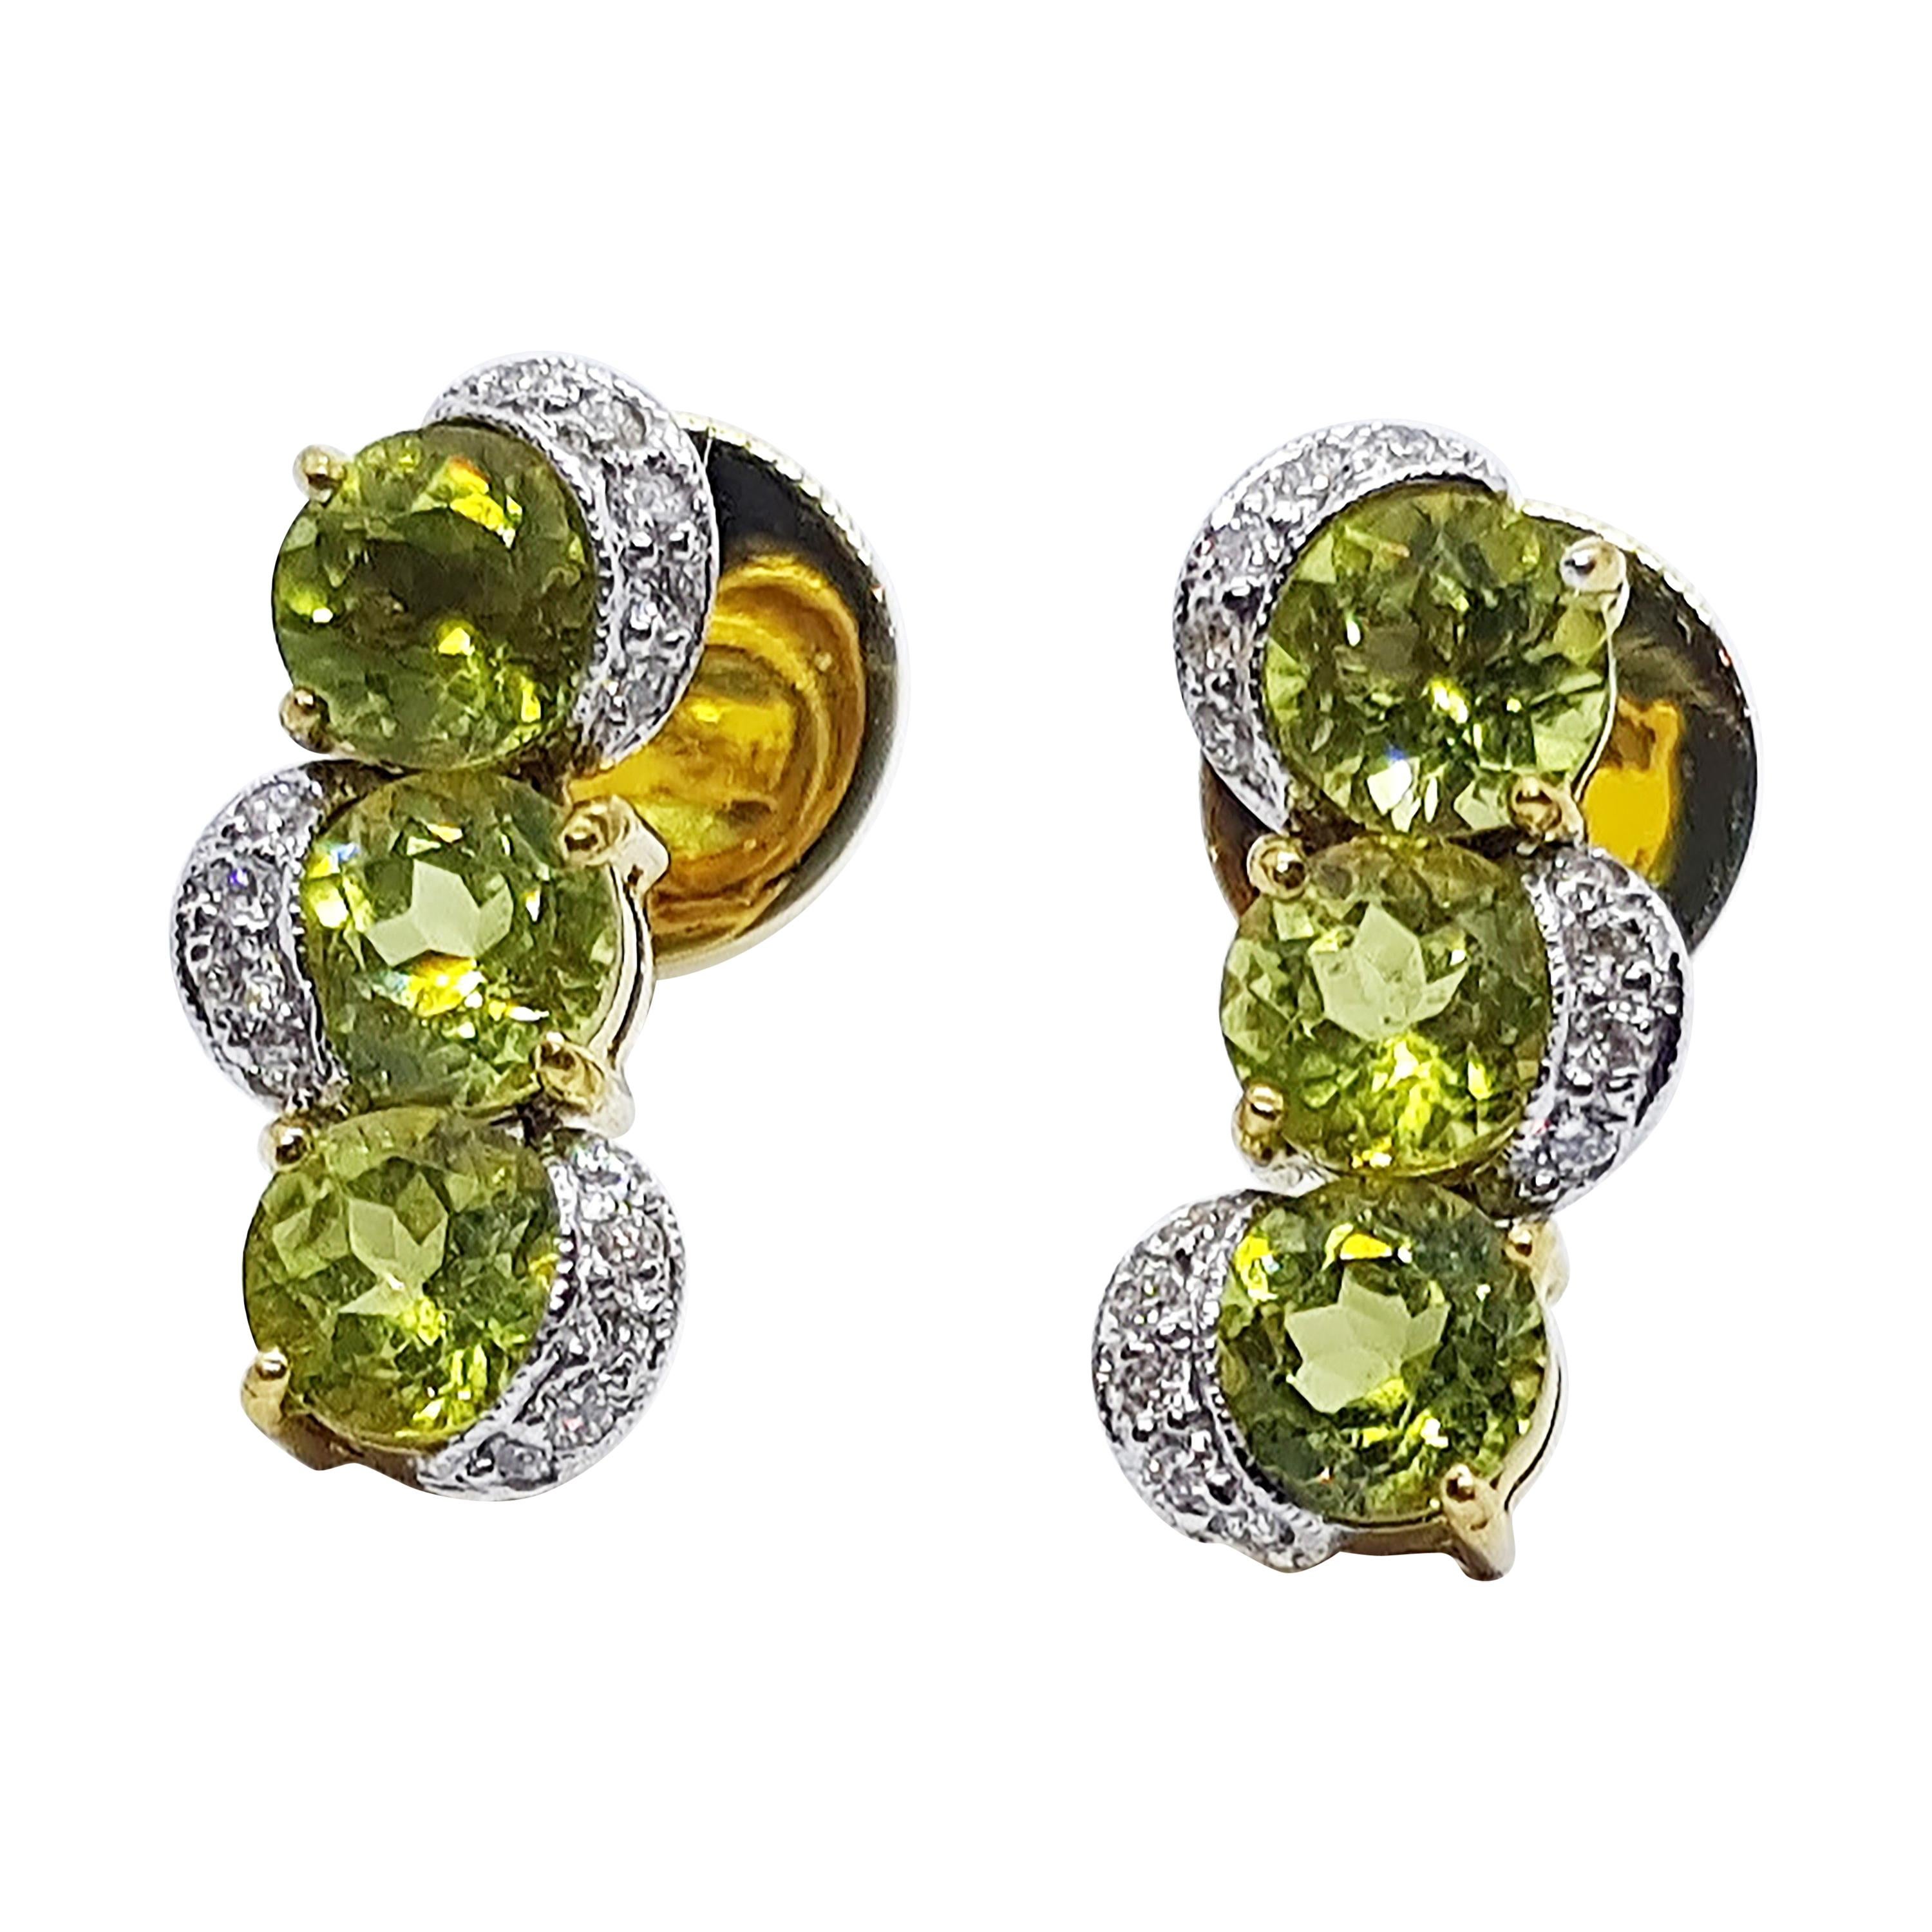 Peridot & Fancy Green Diamond Earrings 14K Yellow Gold